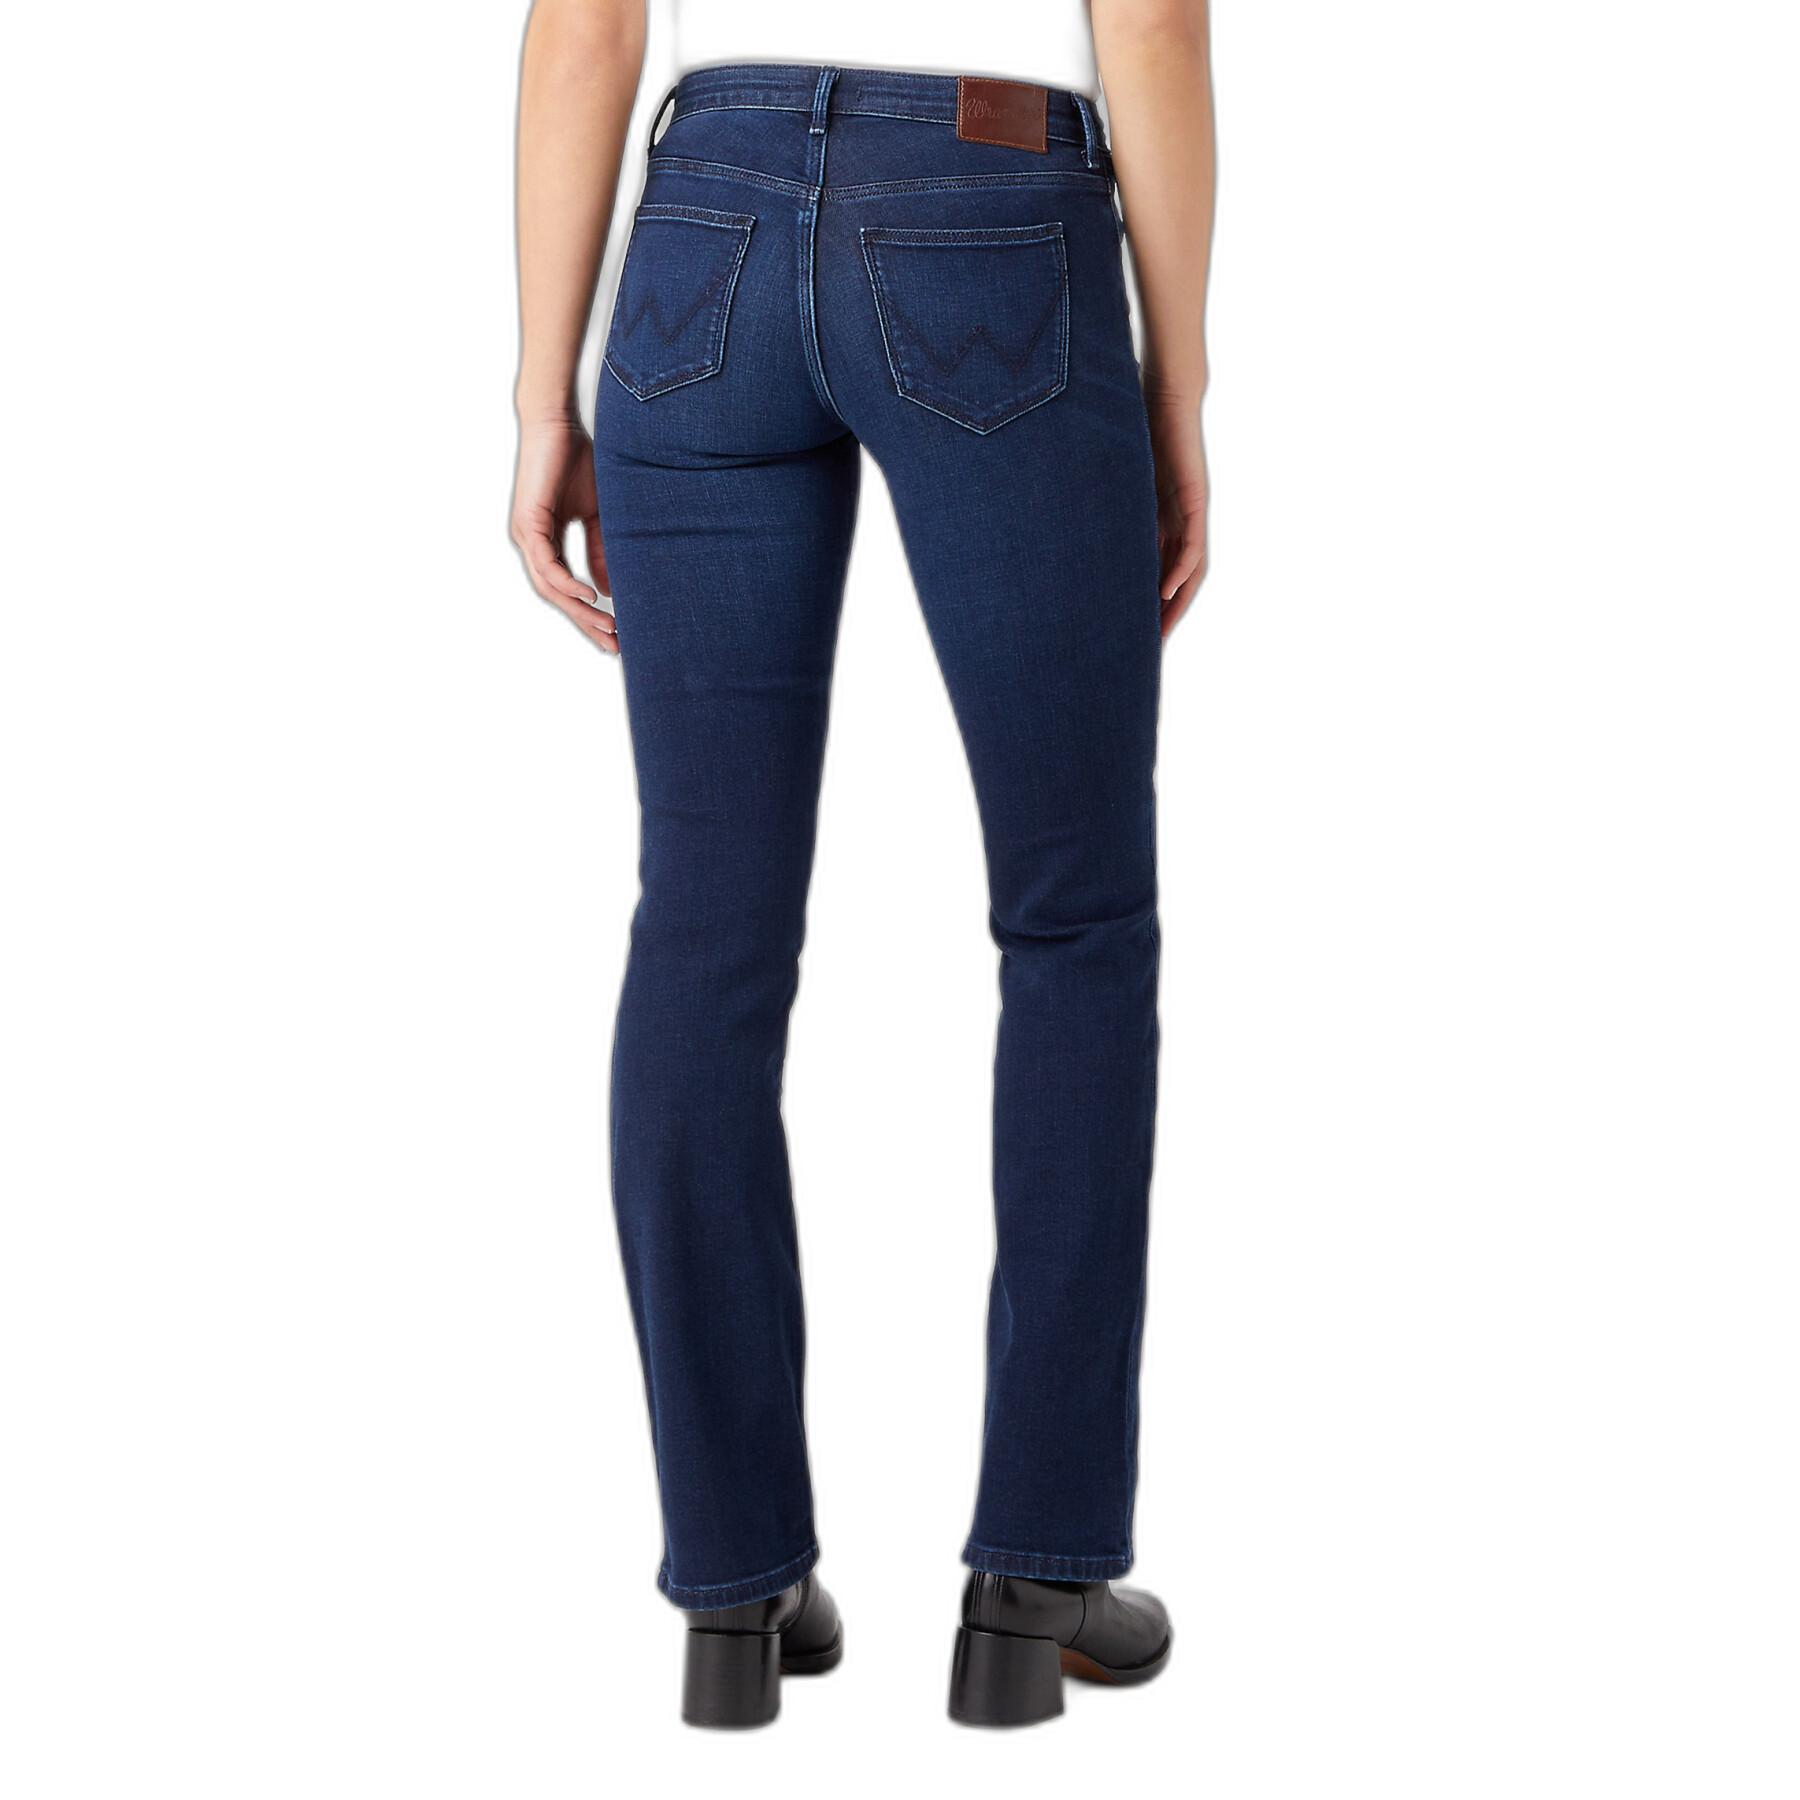 Women's jeans Wrangler